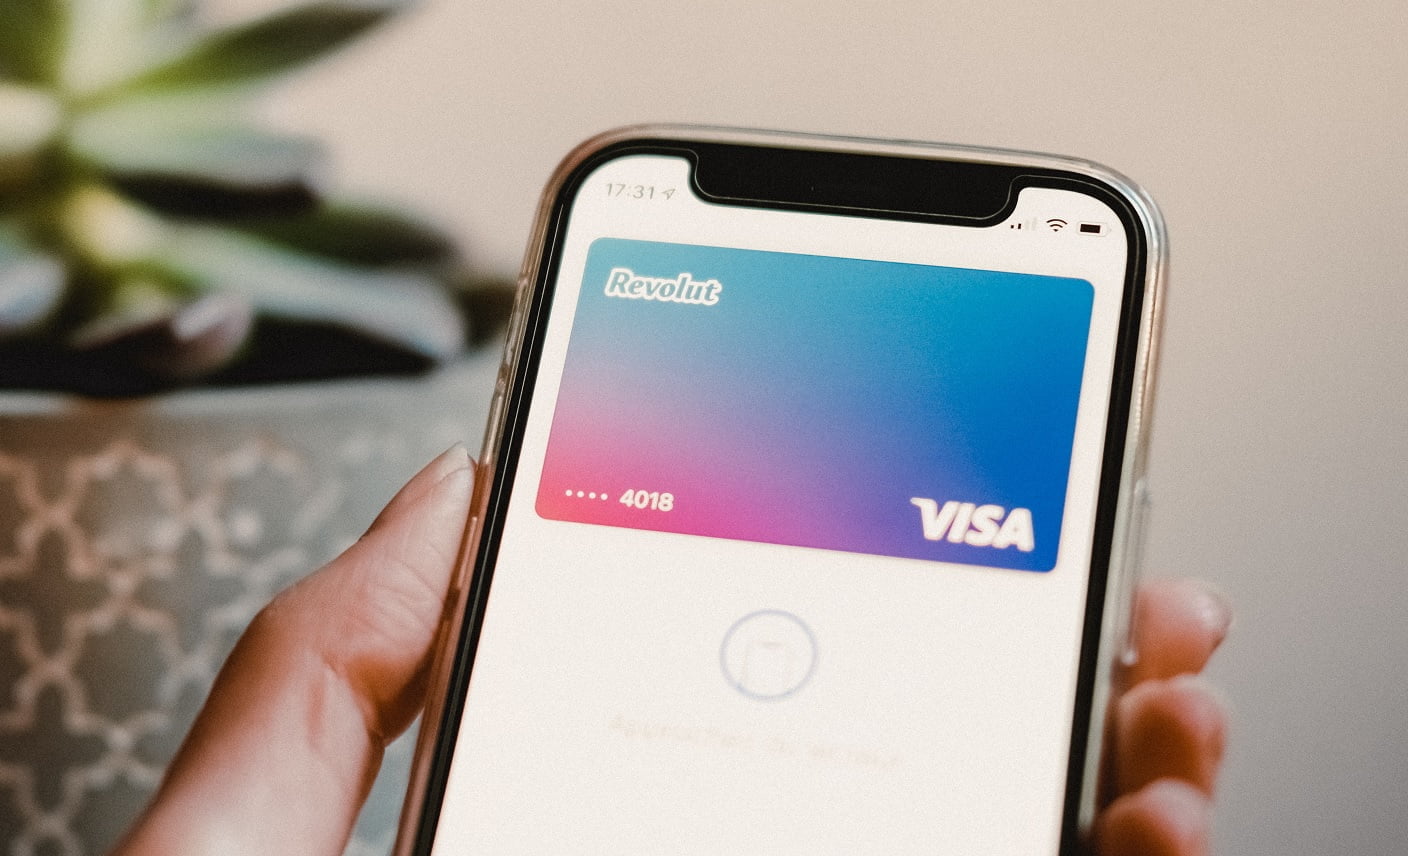 Osoba trzyma smartfon wyświetlający wirtualną kartę płatniczą Revolut Visa na ekranie, z widocznymi ostatnimi cyframi numeru karty i gradientem kolorów w tle.